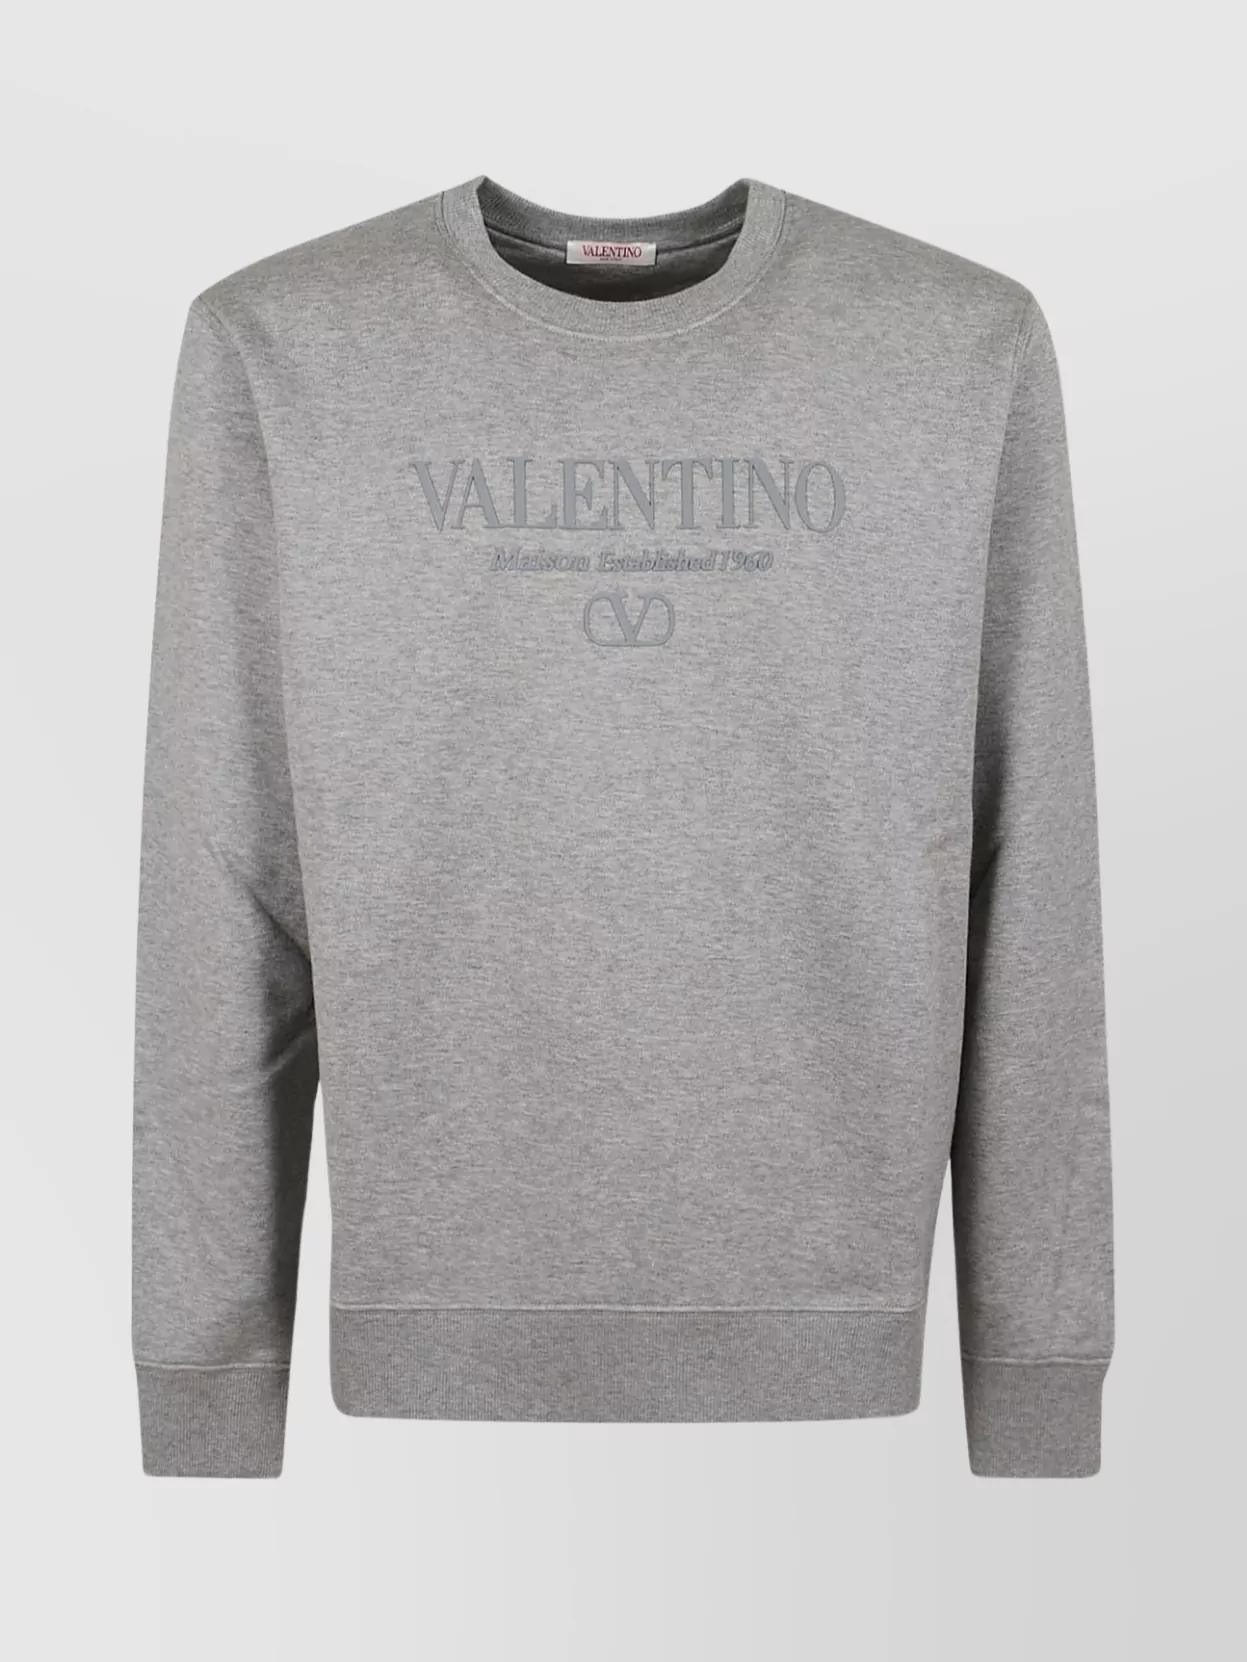 Valentino Cotton Crew Neck Sweater In Gray